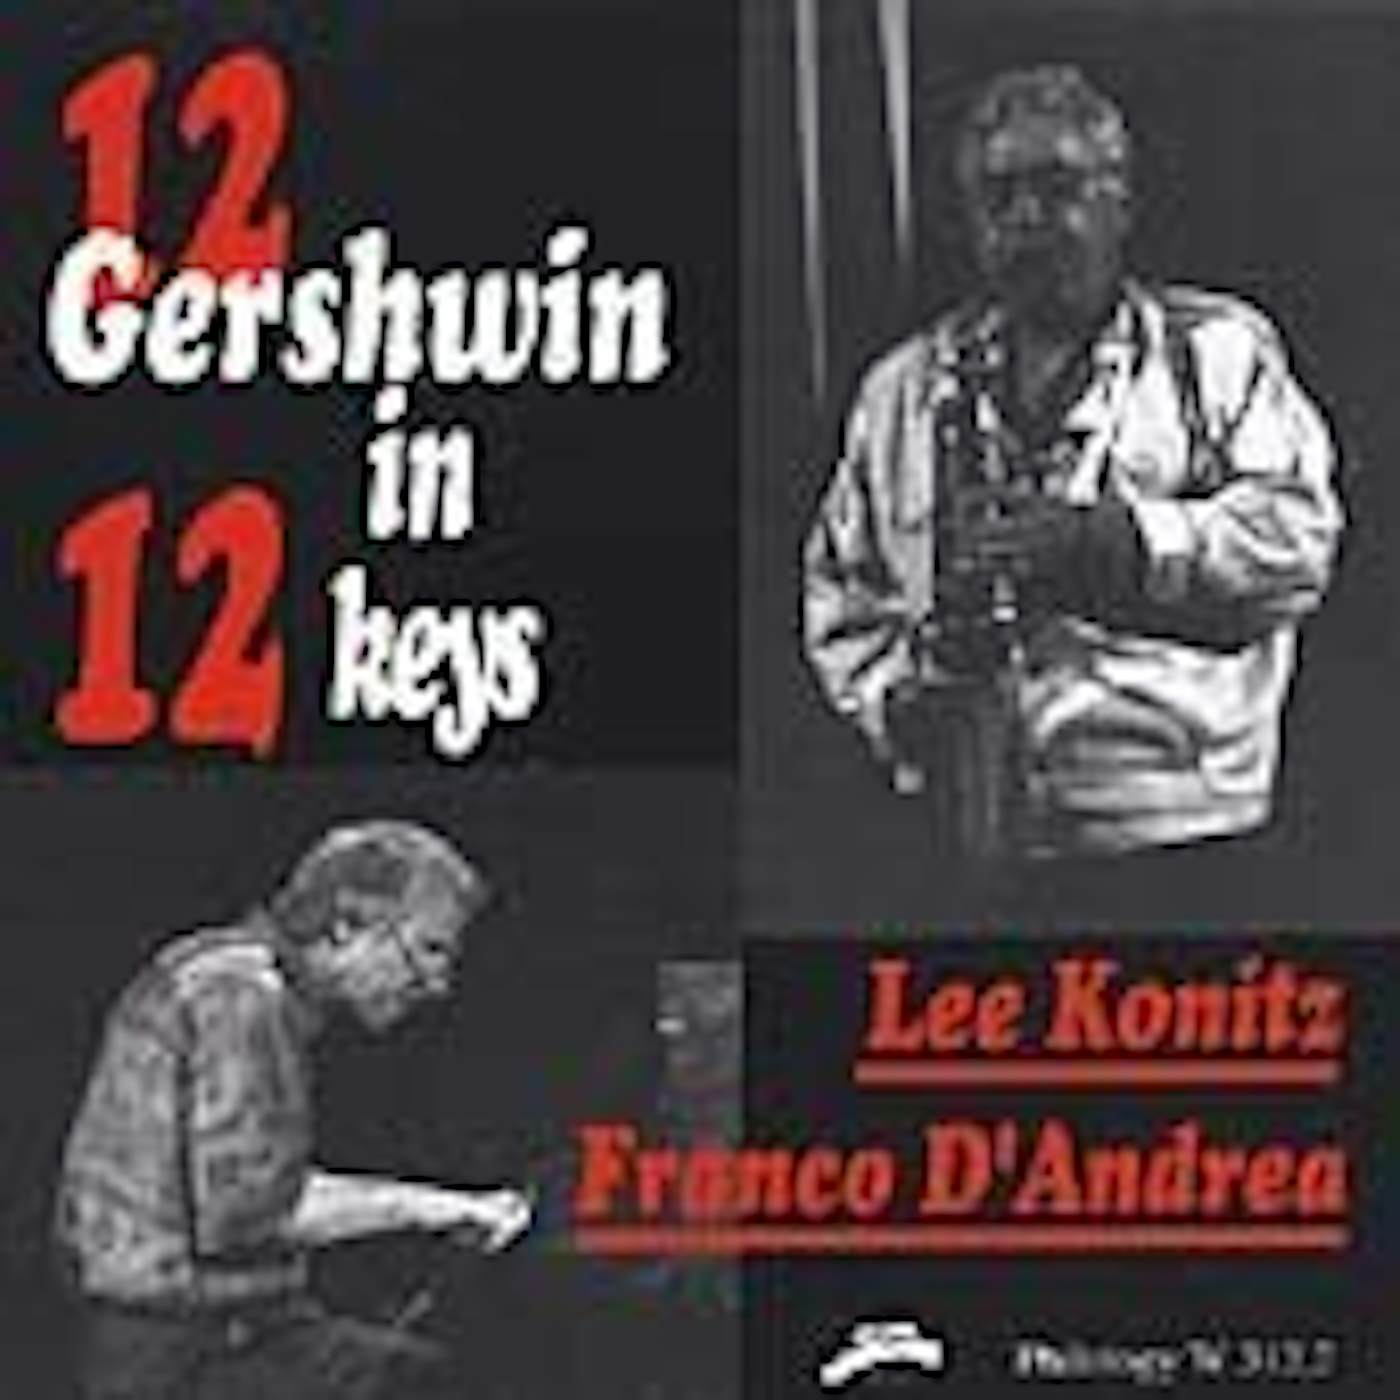 Lee Konitz 12 GERSHWIN IN 12 KEYS CD